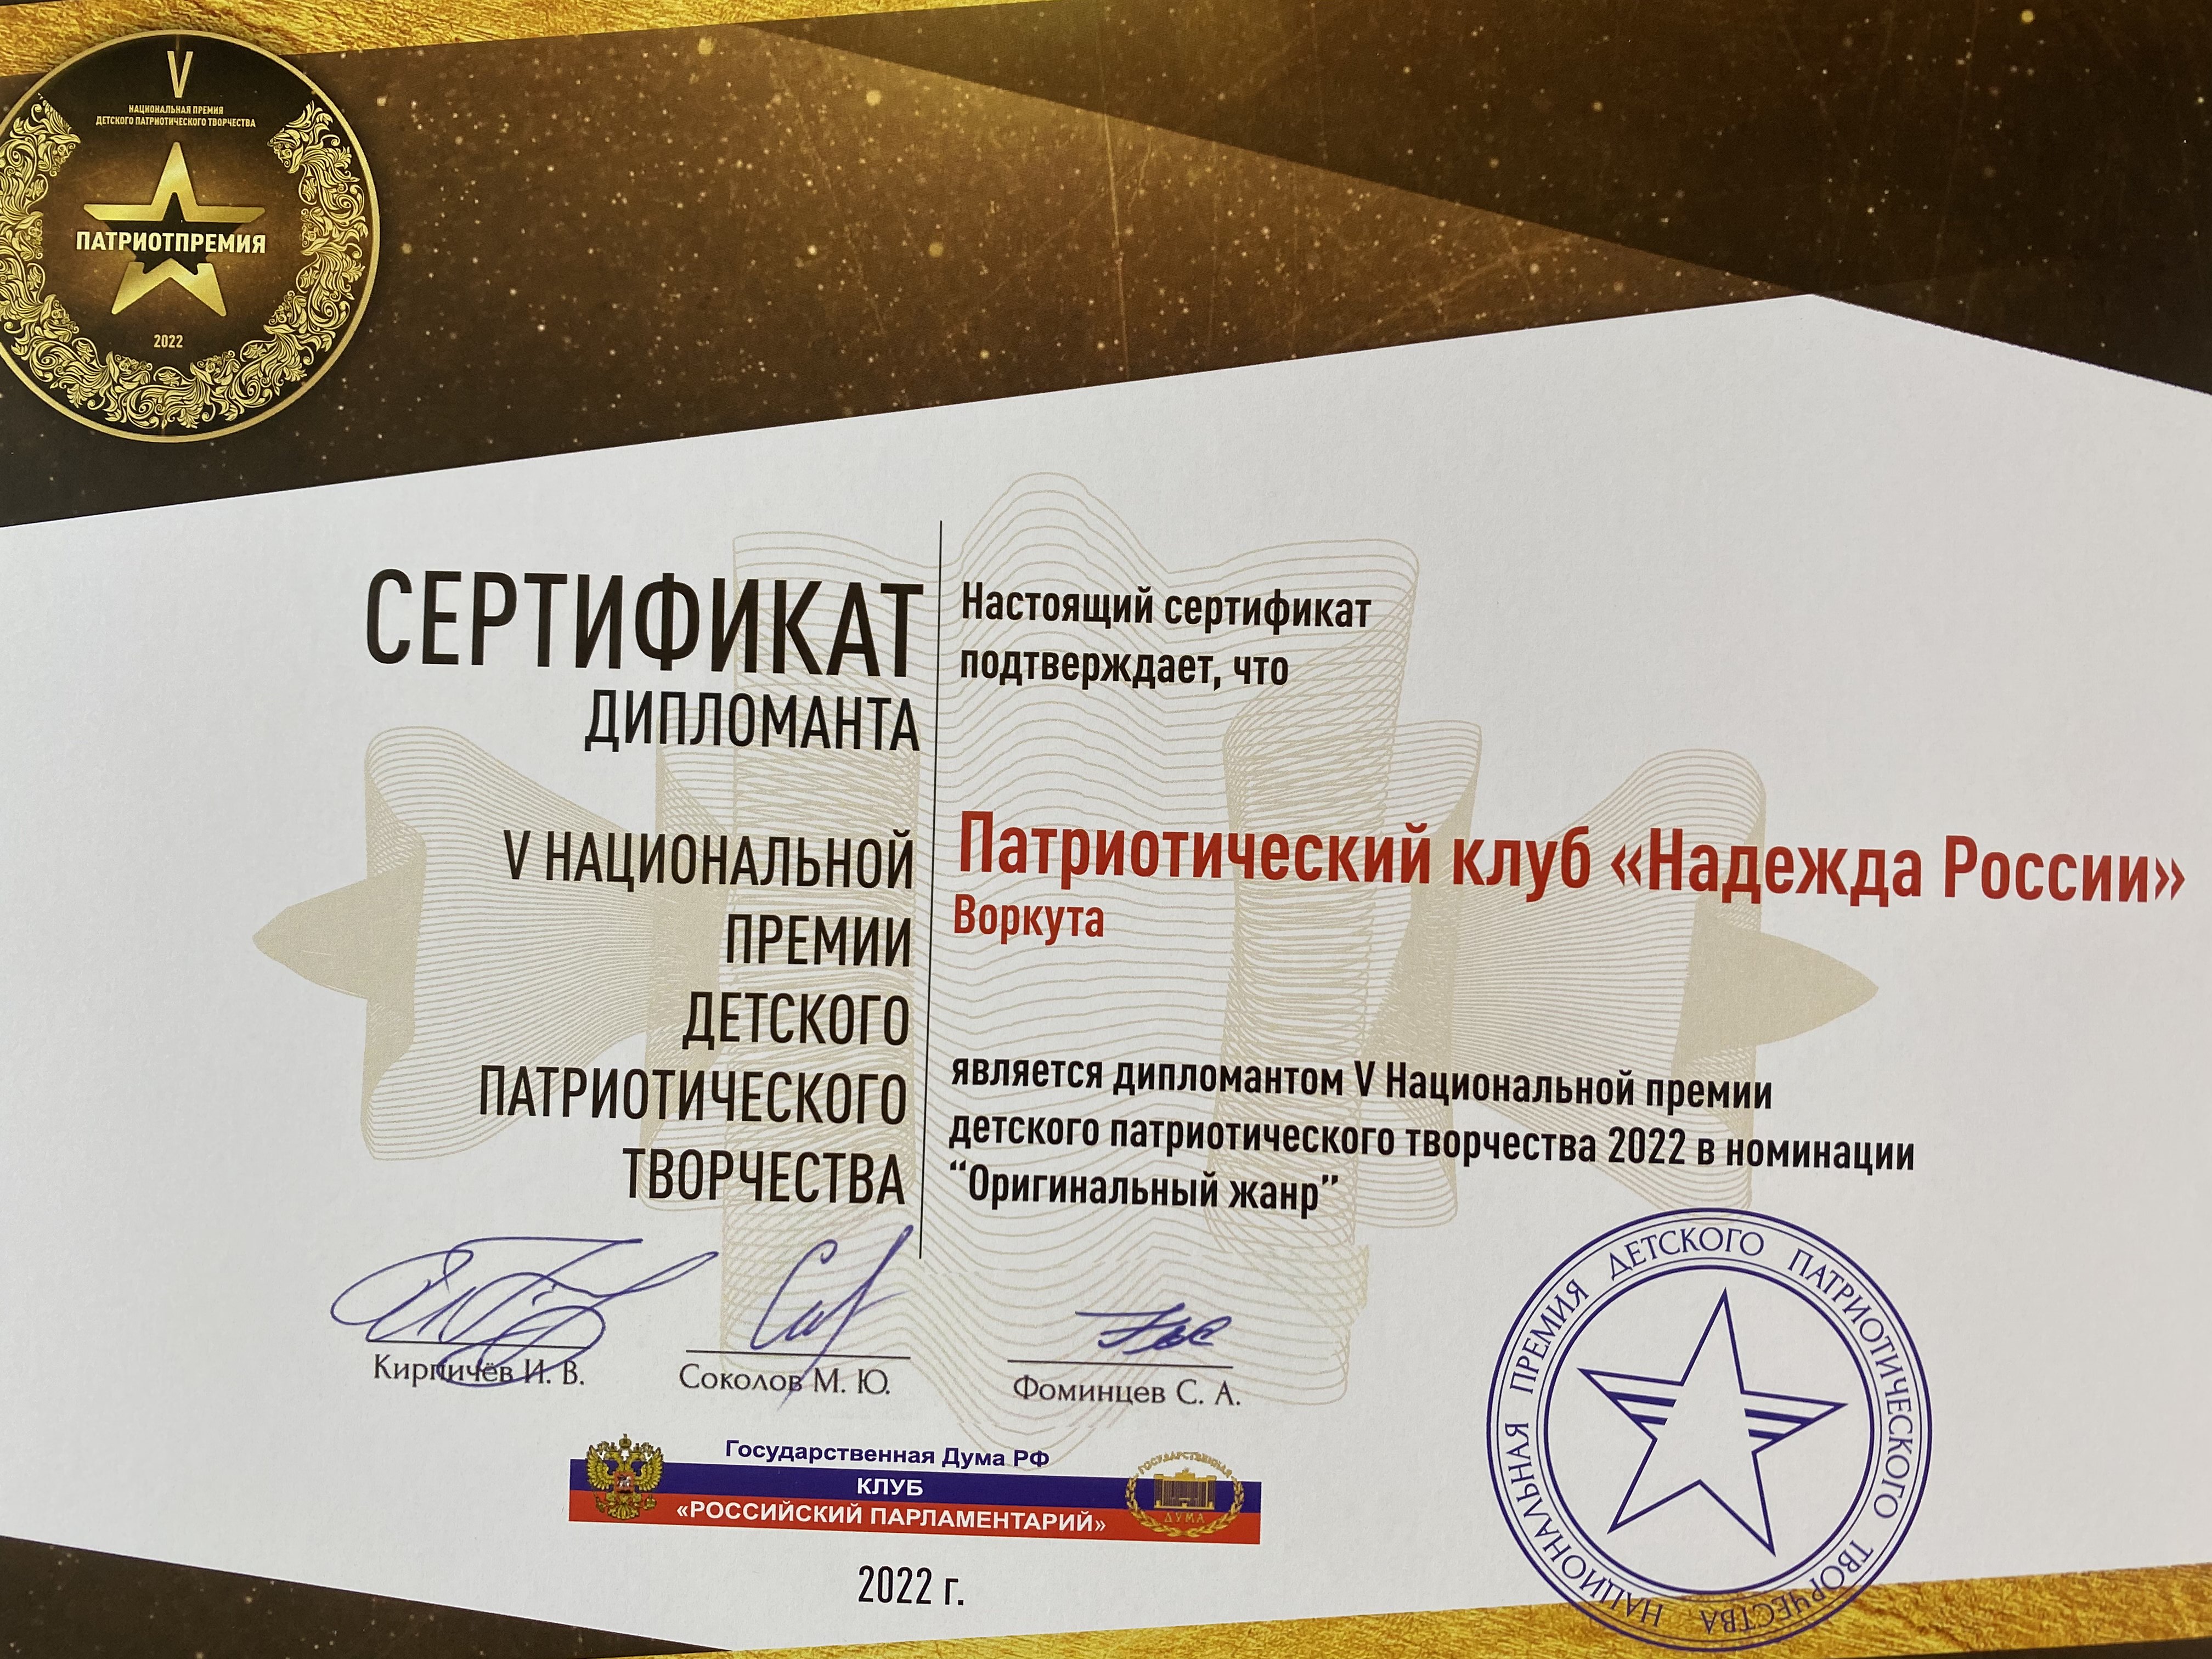 Сертификат дипломанта V Национальной премии детского патриотического творчества 2022 в номинации "Оригинальный жанр"